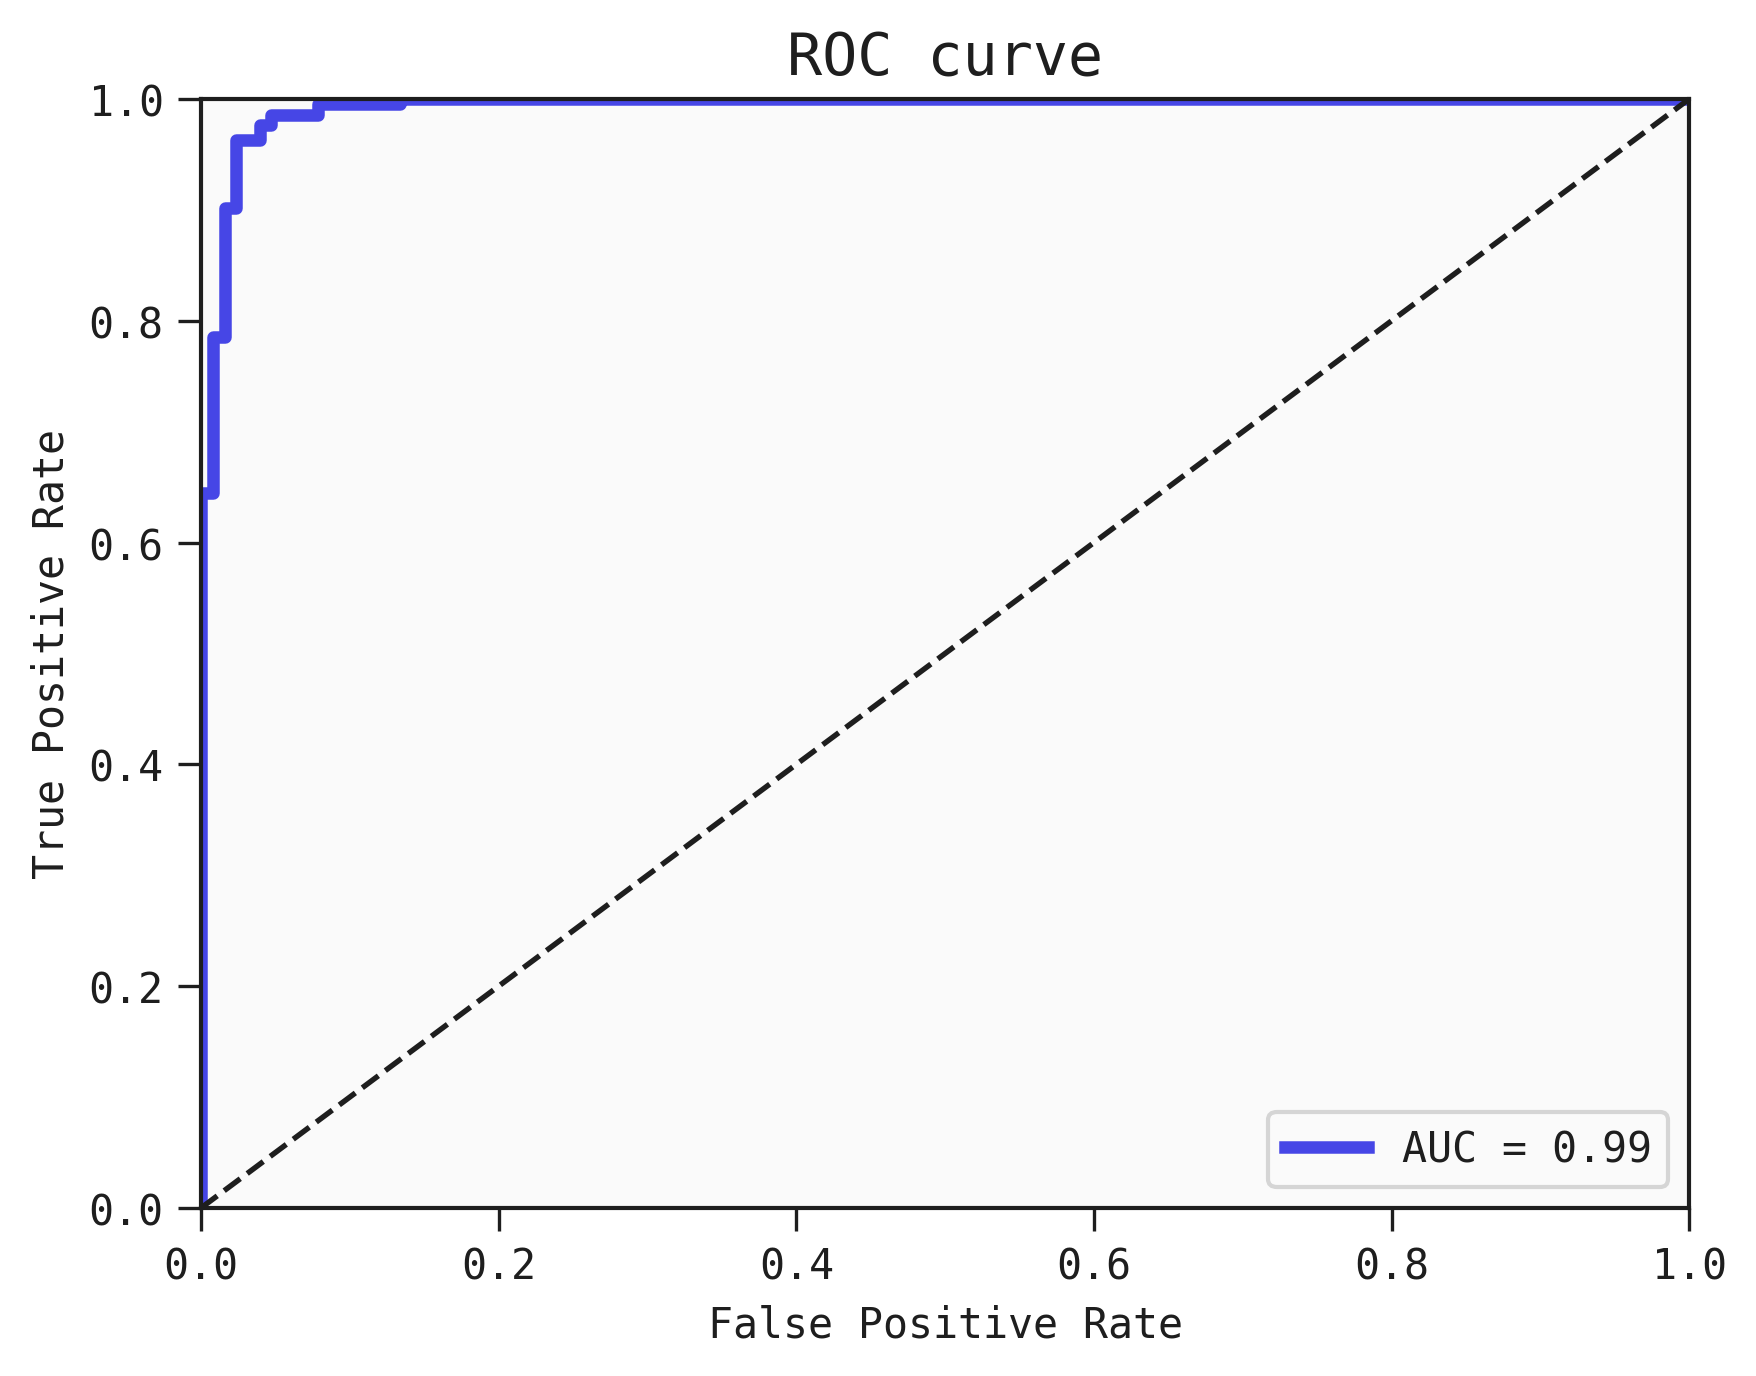 Plot showing the ROC curve